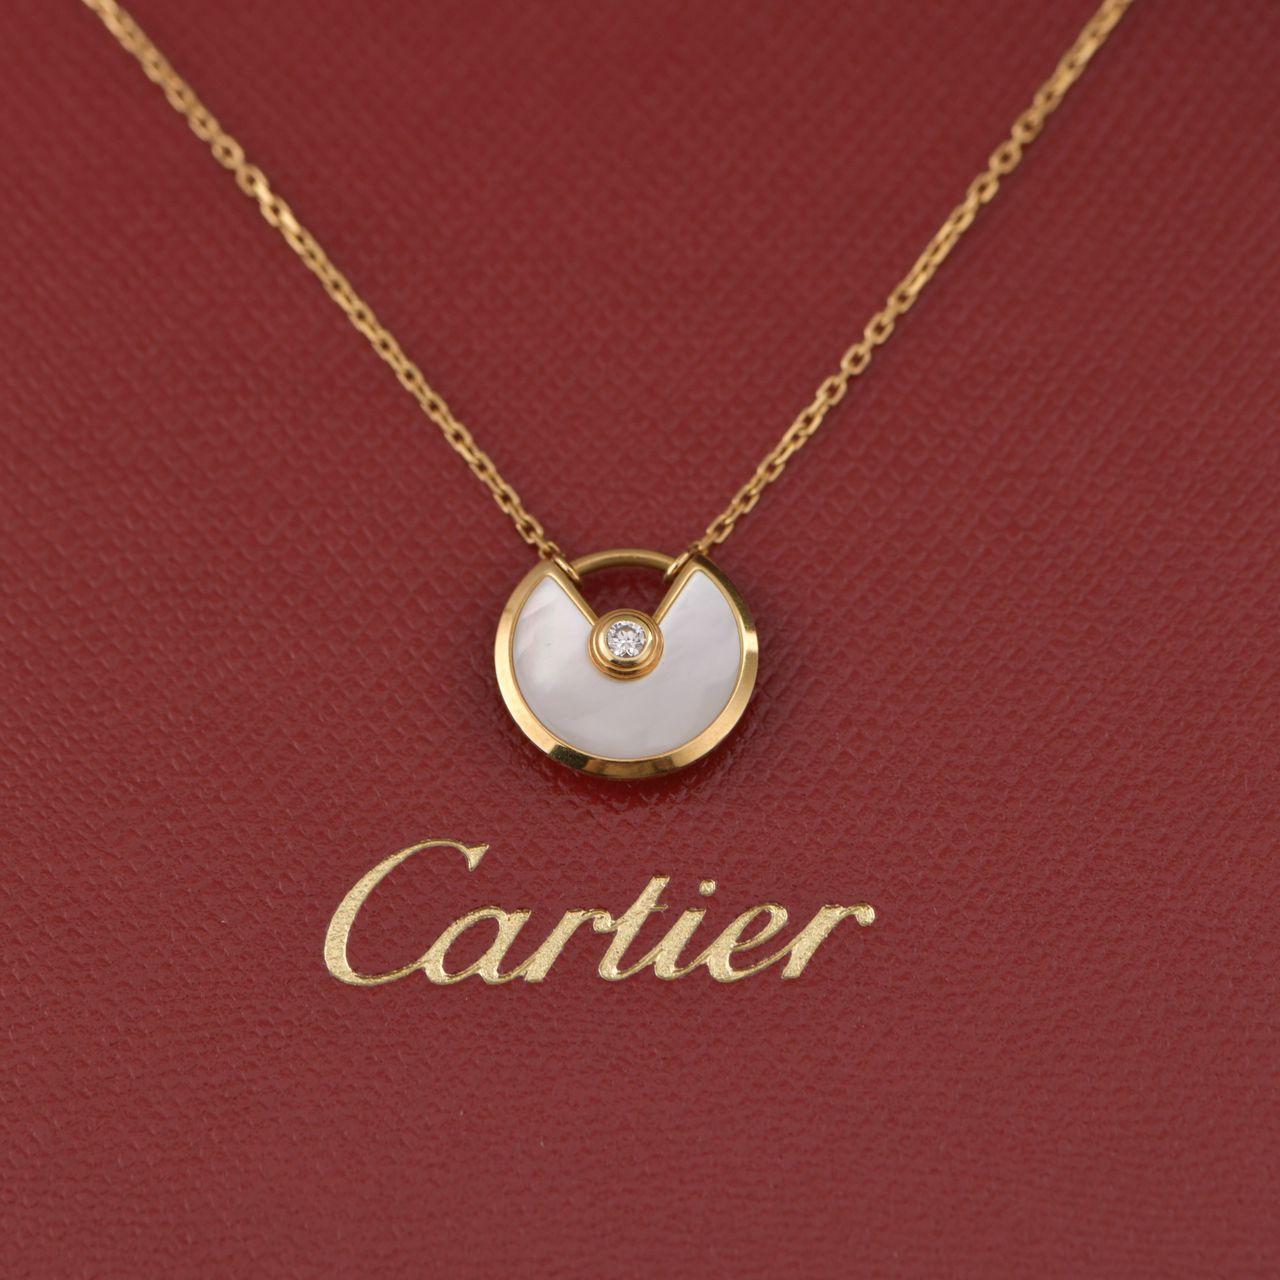 cartier necklace